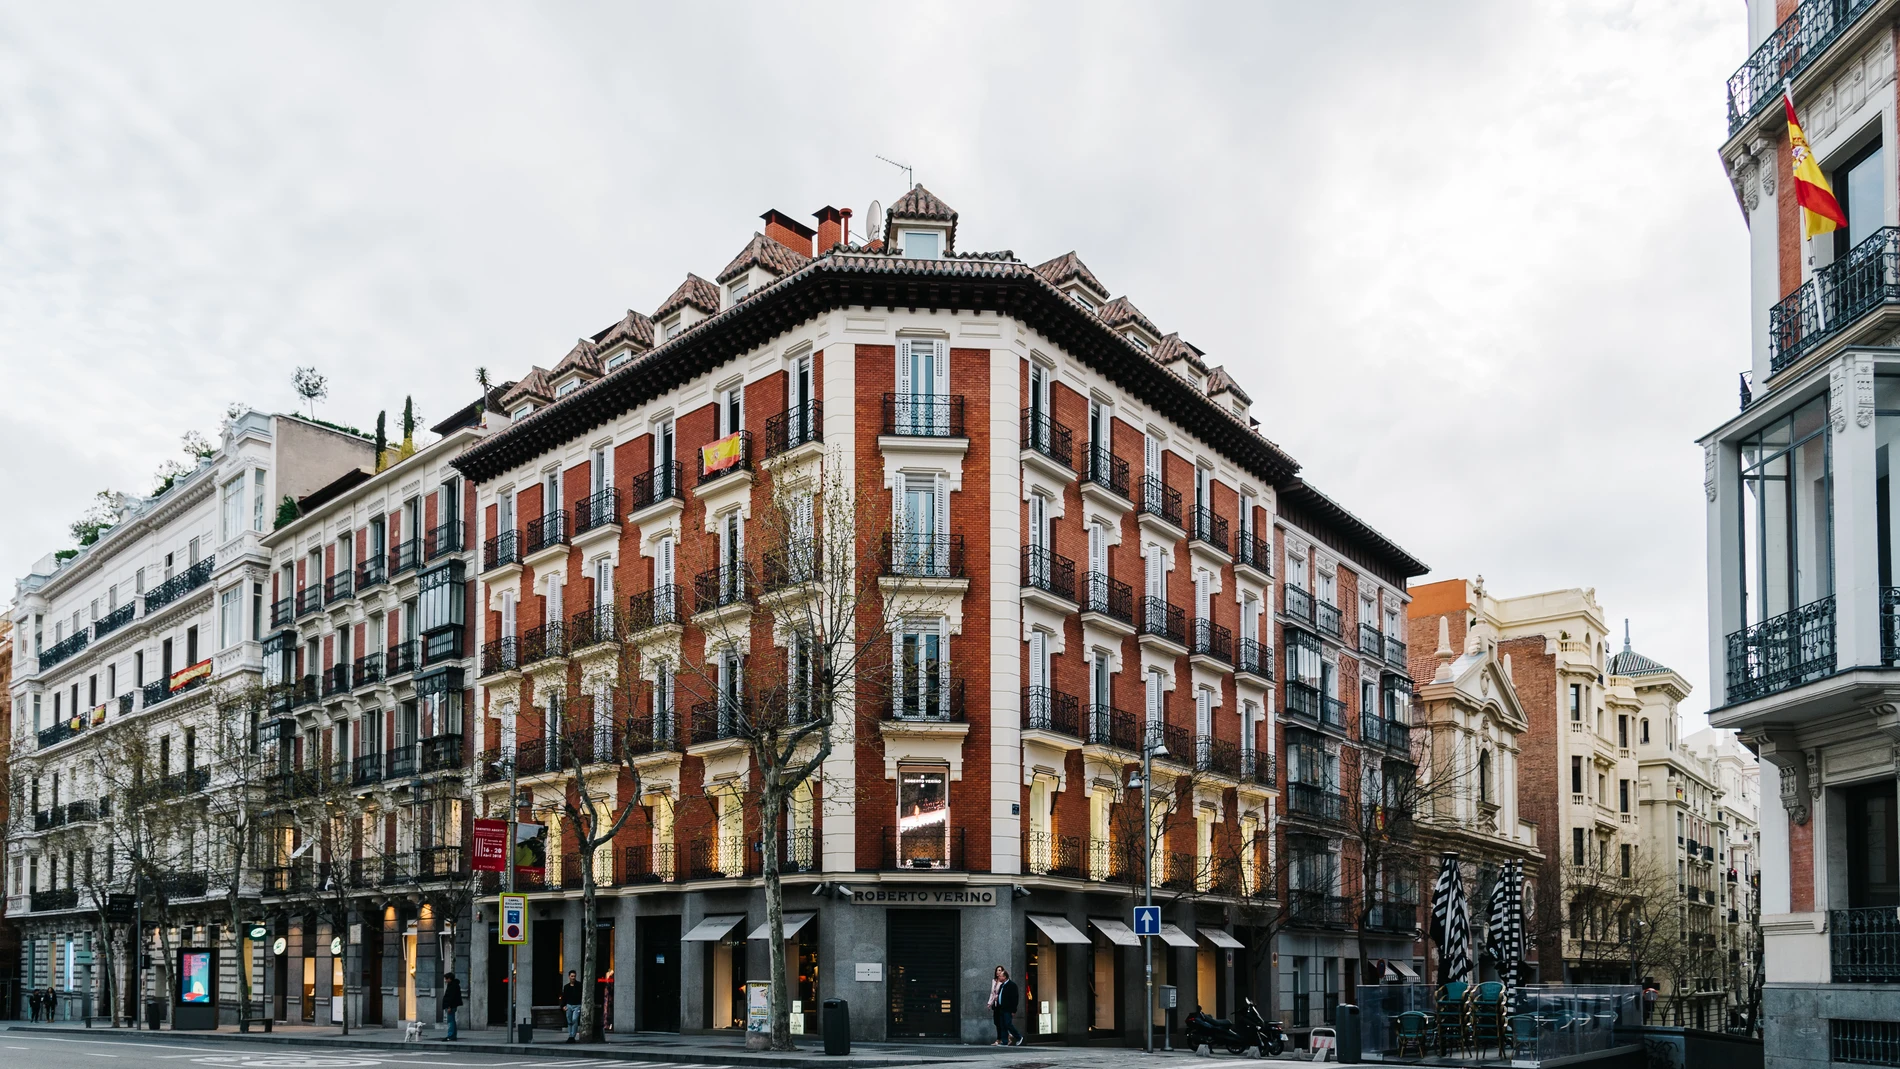 España destaca por su gastronomía, historia, cultura o paisajes, pero también por sus calles